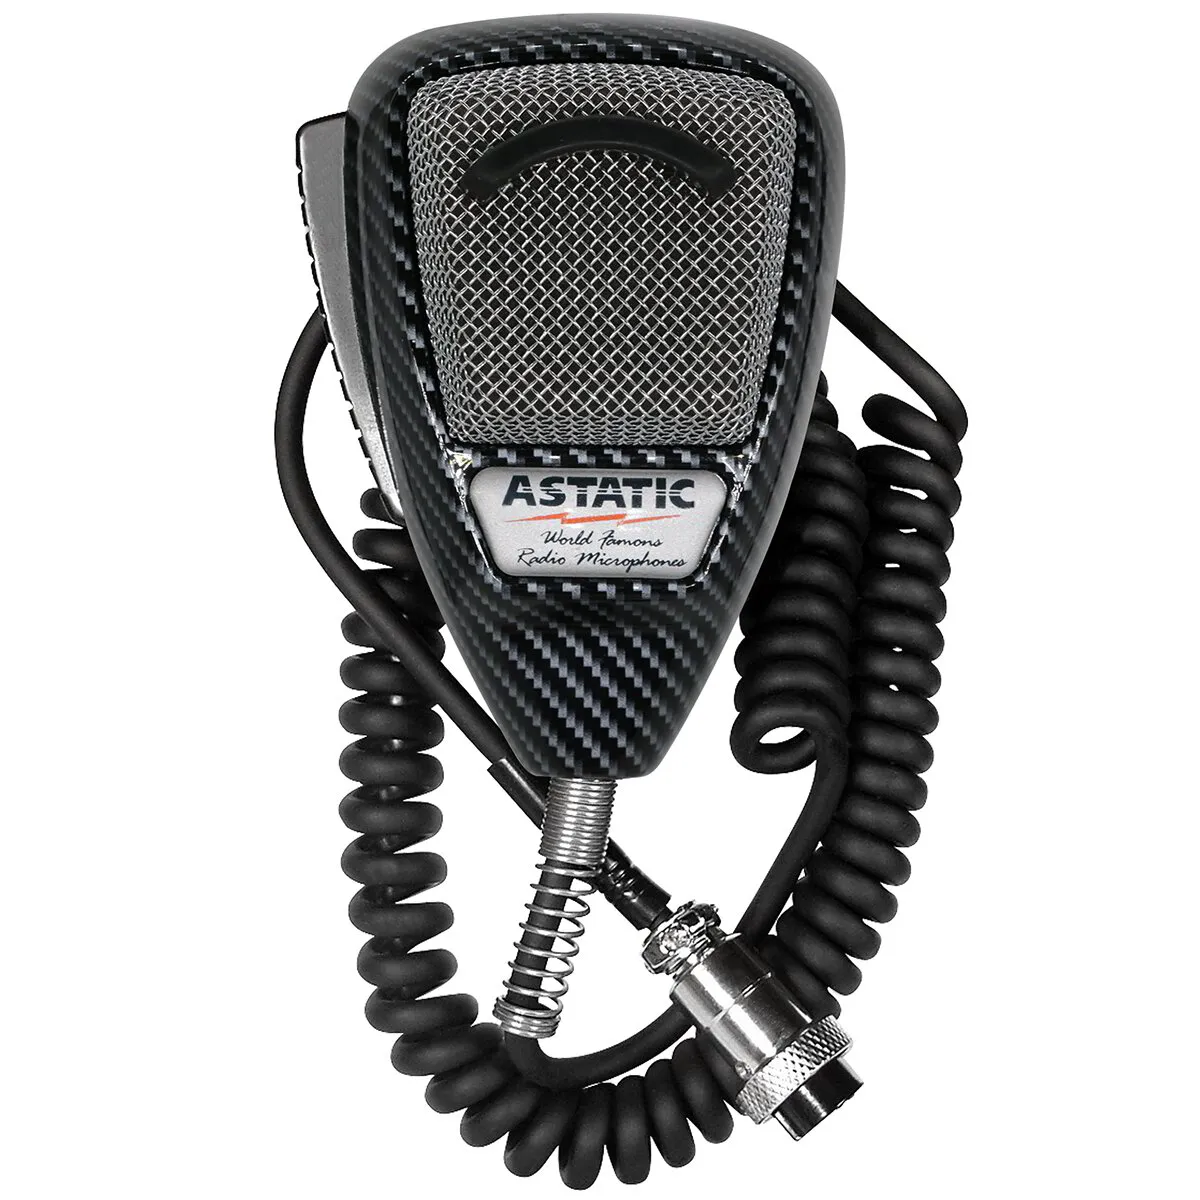 Carbon Fiber Astatic 636L Noise Canceling Microphone